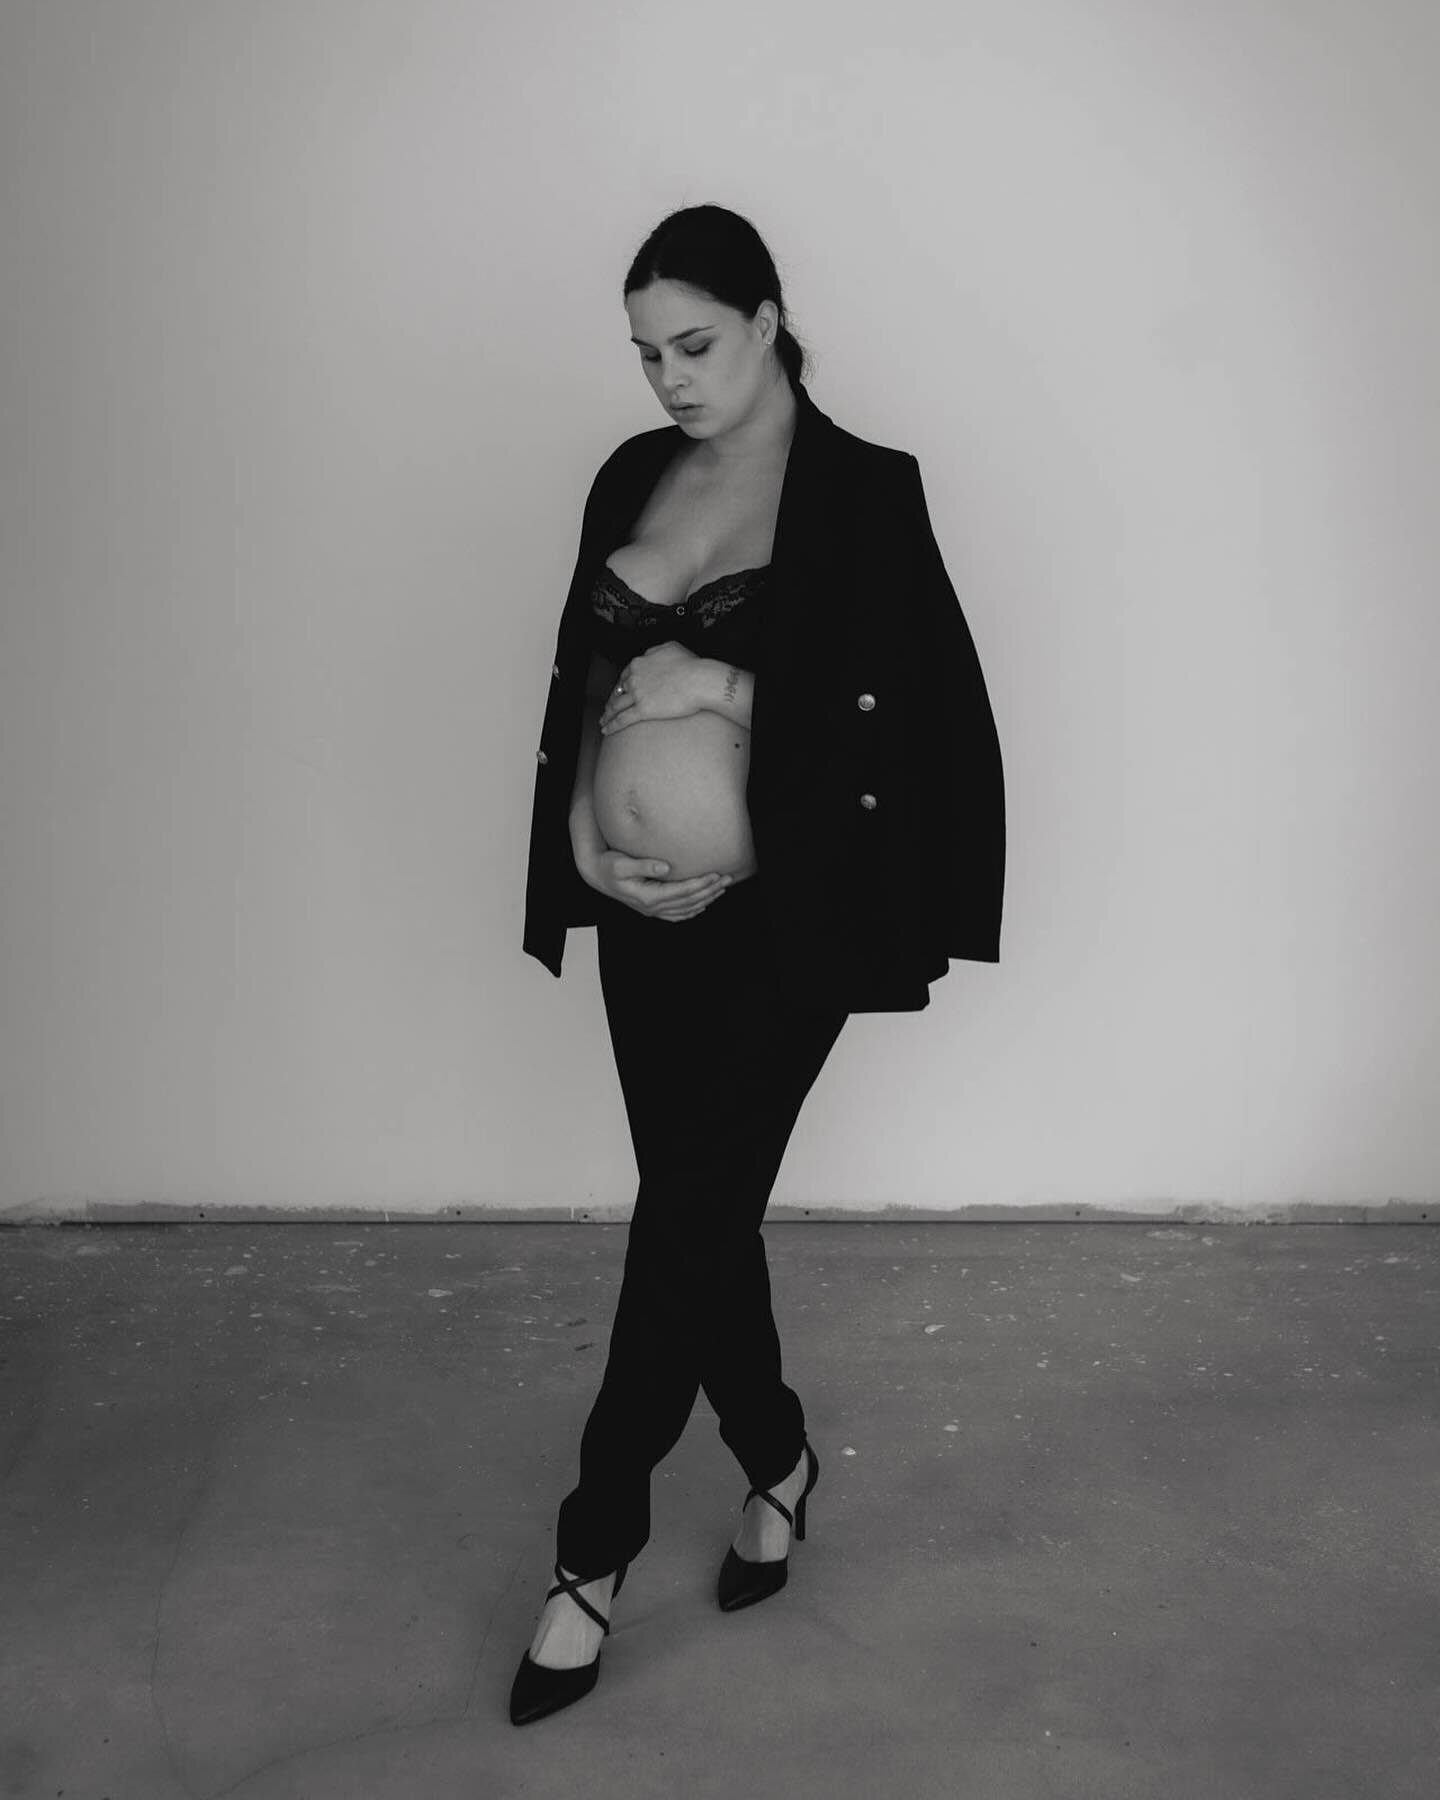 De eerste zwangerschapsstoot in de studio is een feit! Ohhh en wat ben ik blij met deze beelden 💓

Ik vind het zo leuk om wat meer esthetisch beeld te maken. Clean, simpel, krachtig , mooi licht en portret.

Dankjewel lieve @demijuffing 🌸

#zwanger